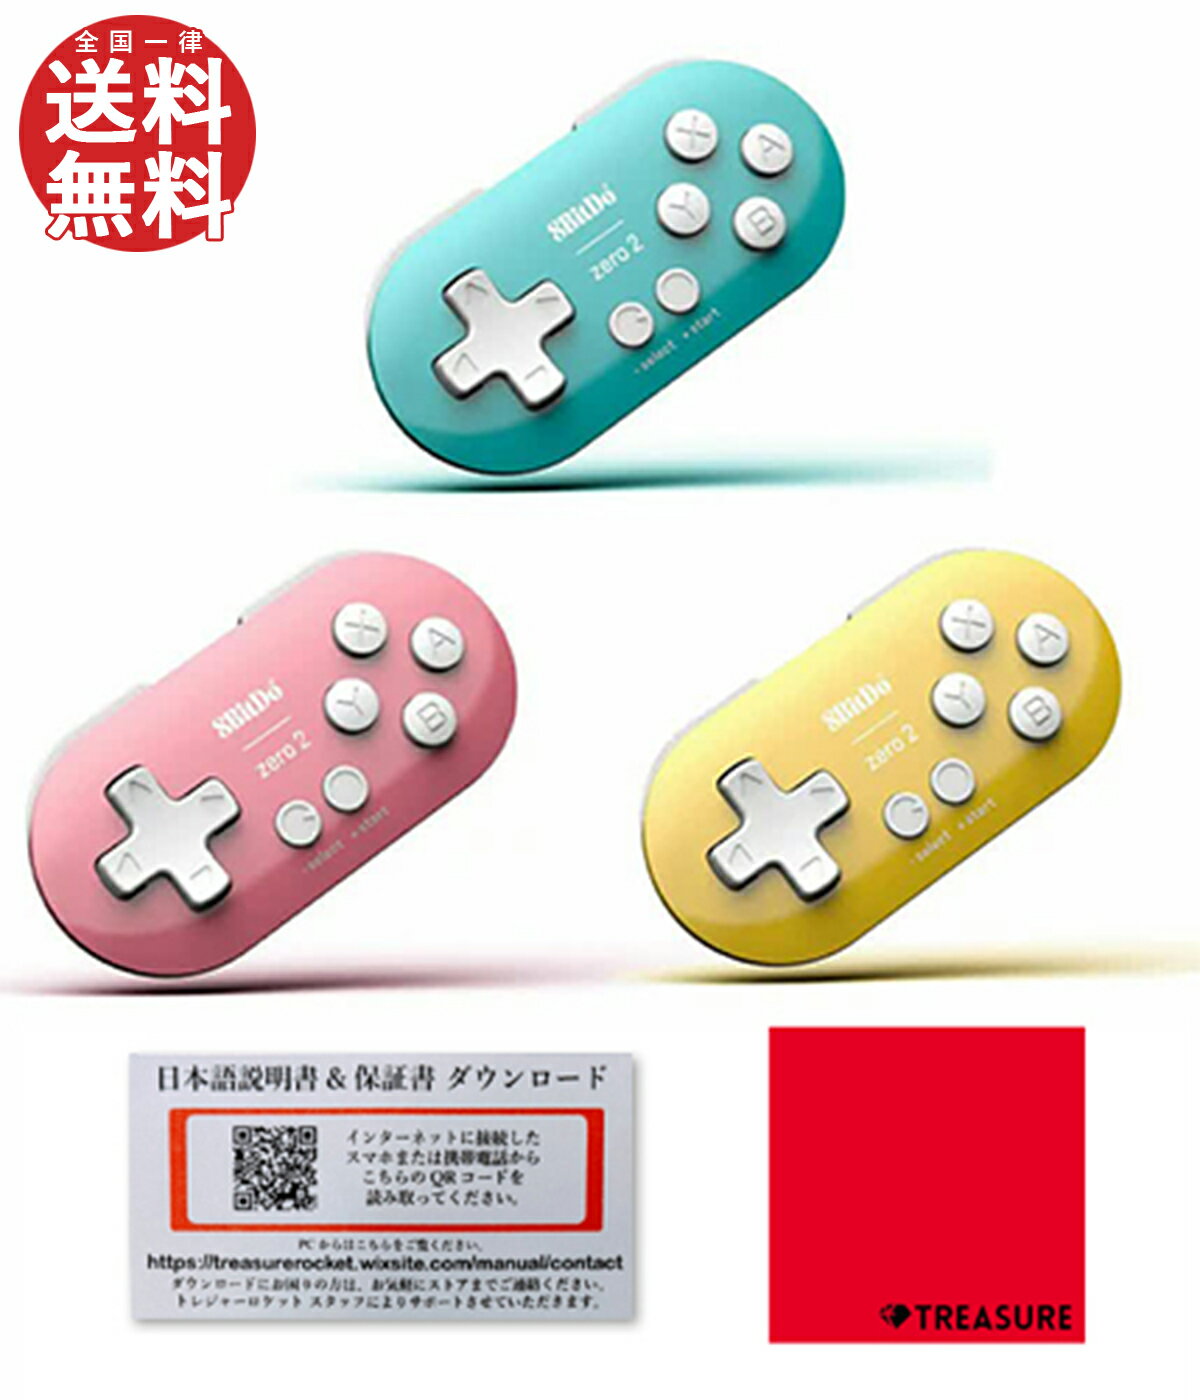 [正規品] 8Bitdo Zero2 Bluetooth Wireless GamePad ゲームコントローラー 左手用デバイス [日本語説明書付/3カ月保証/セット品]